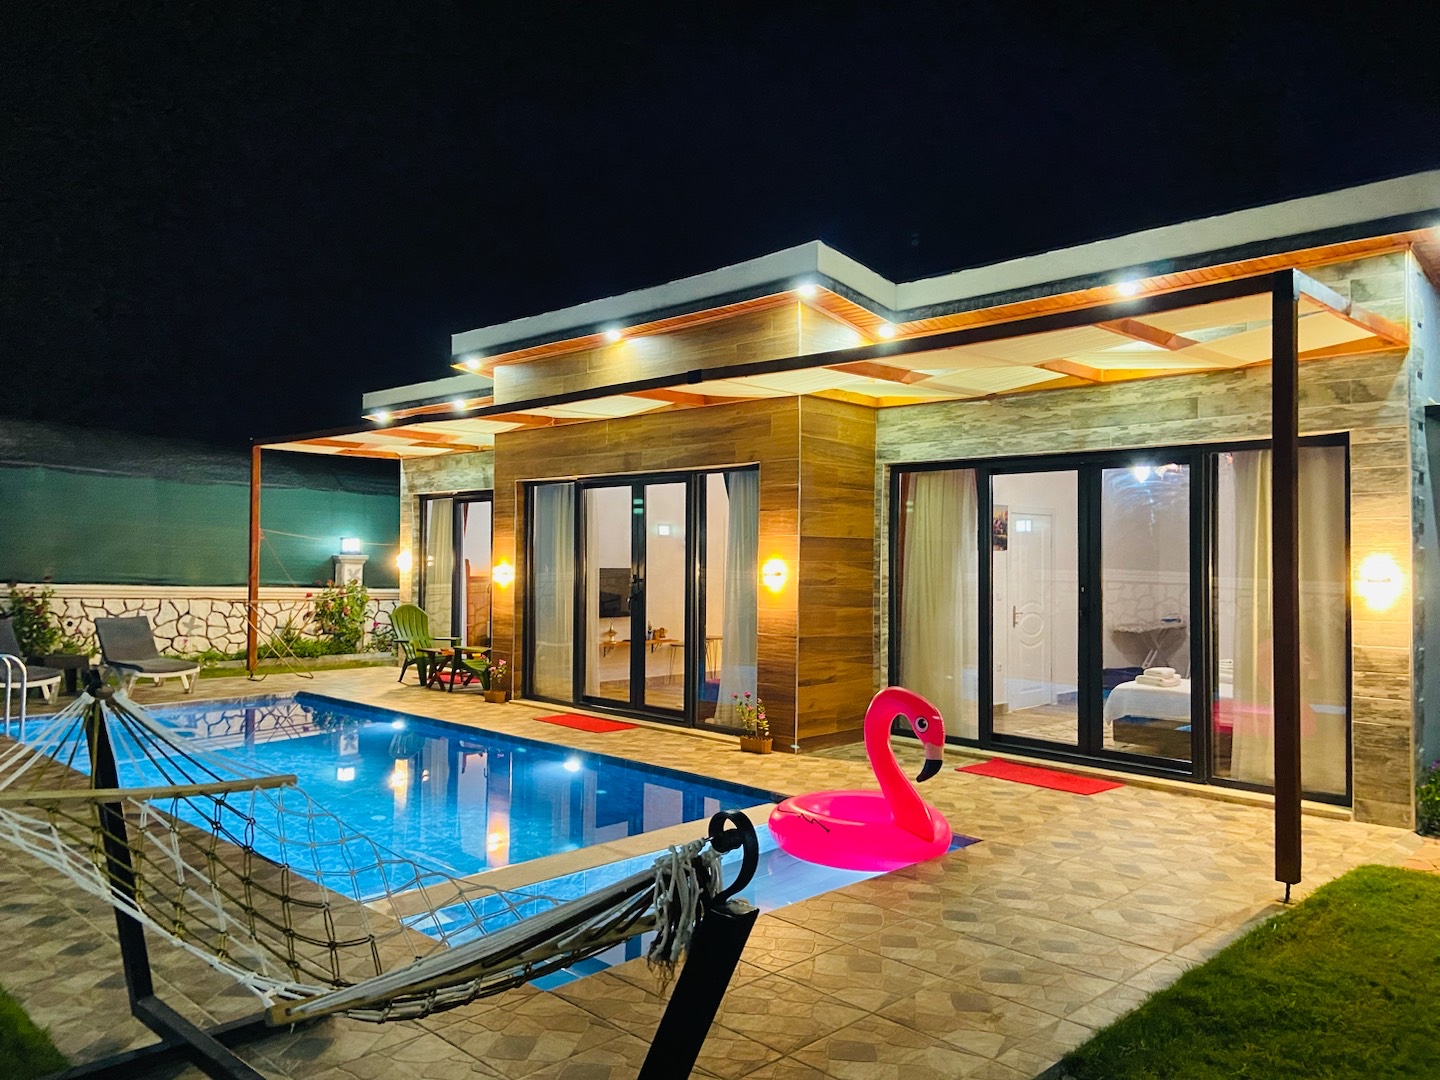 Fethiye Karagedik'te Sakin Konumda, Özel Havuzlu, Modern Tasarımlı Villa